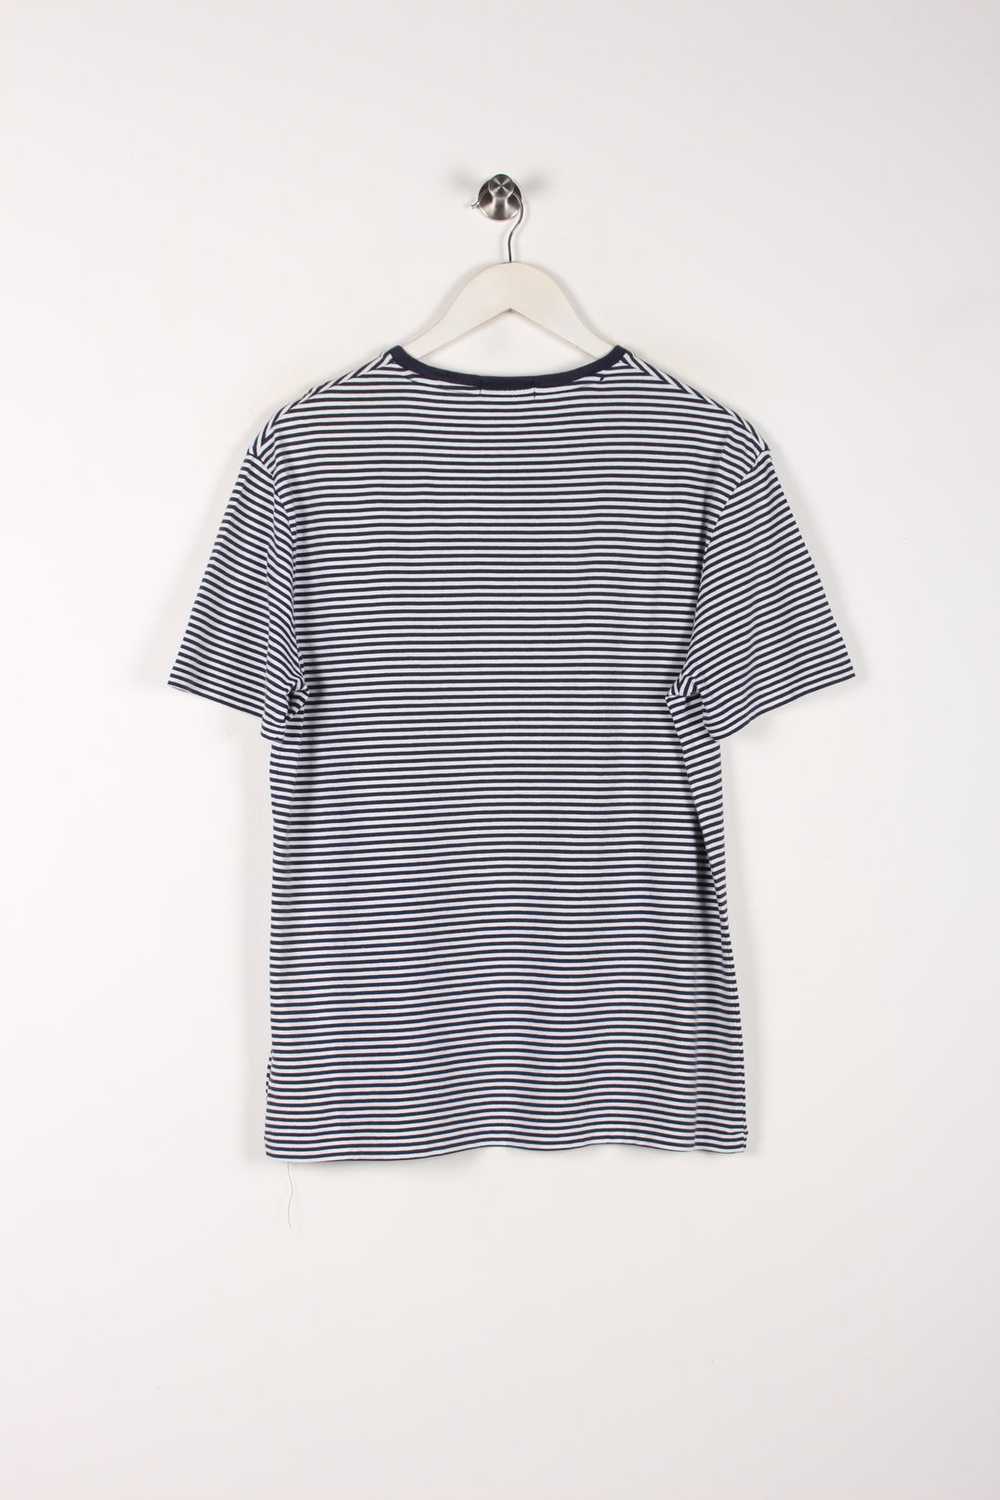 Ralph Lauren Striped T-Shirt Medium - image 3